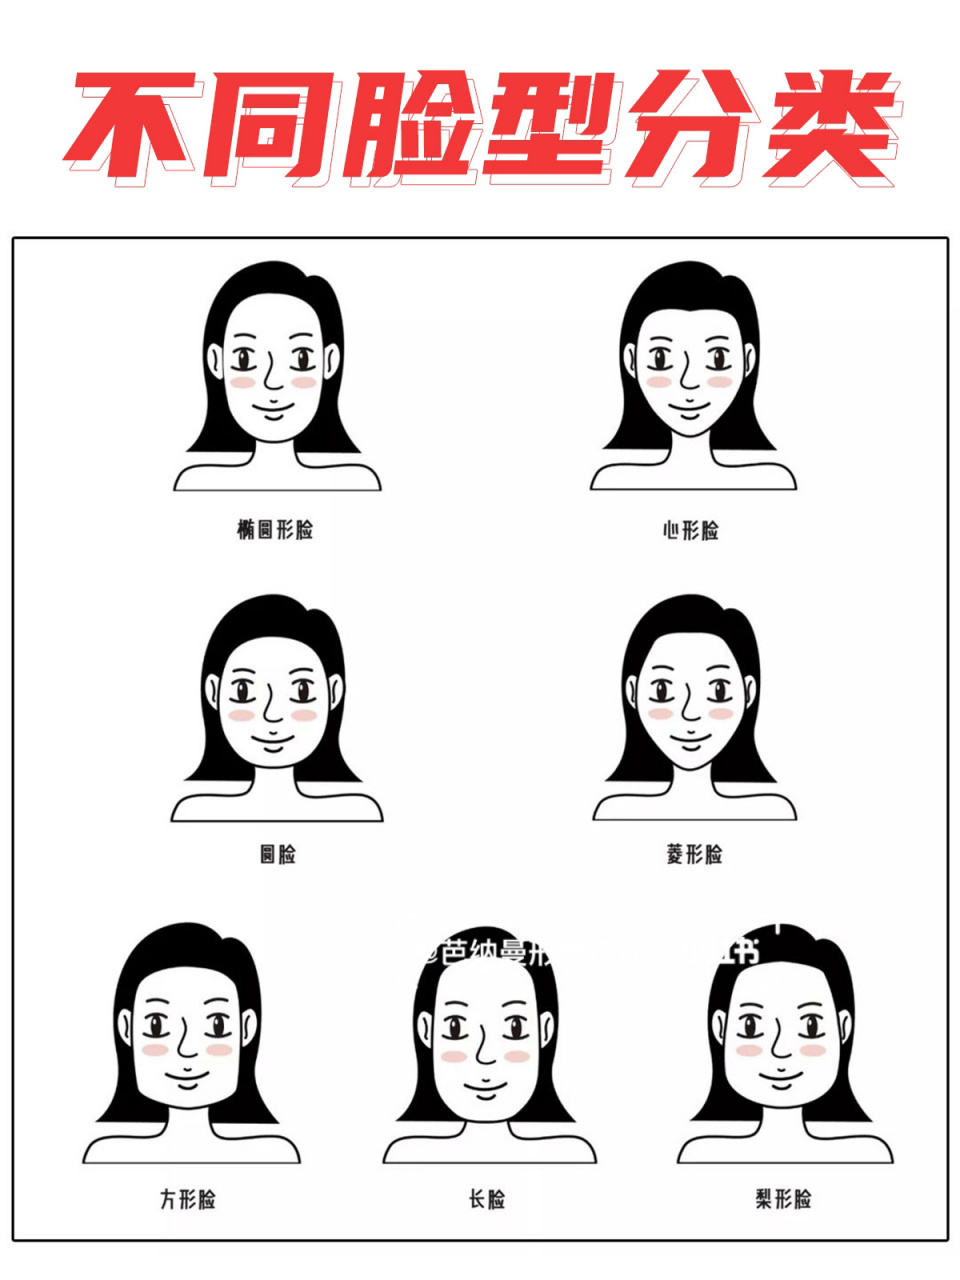 心形脸 是目前最流行的v型脸,以额头最宽,下颌最窄,相对完美的脸型为